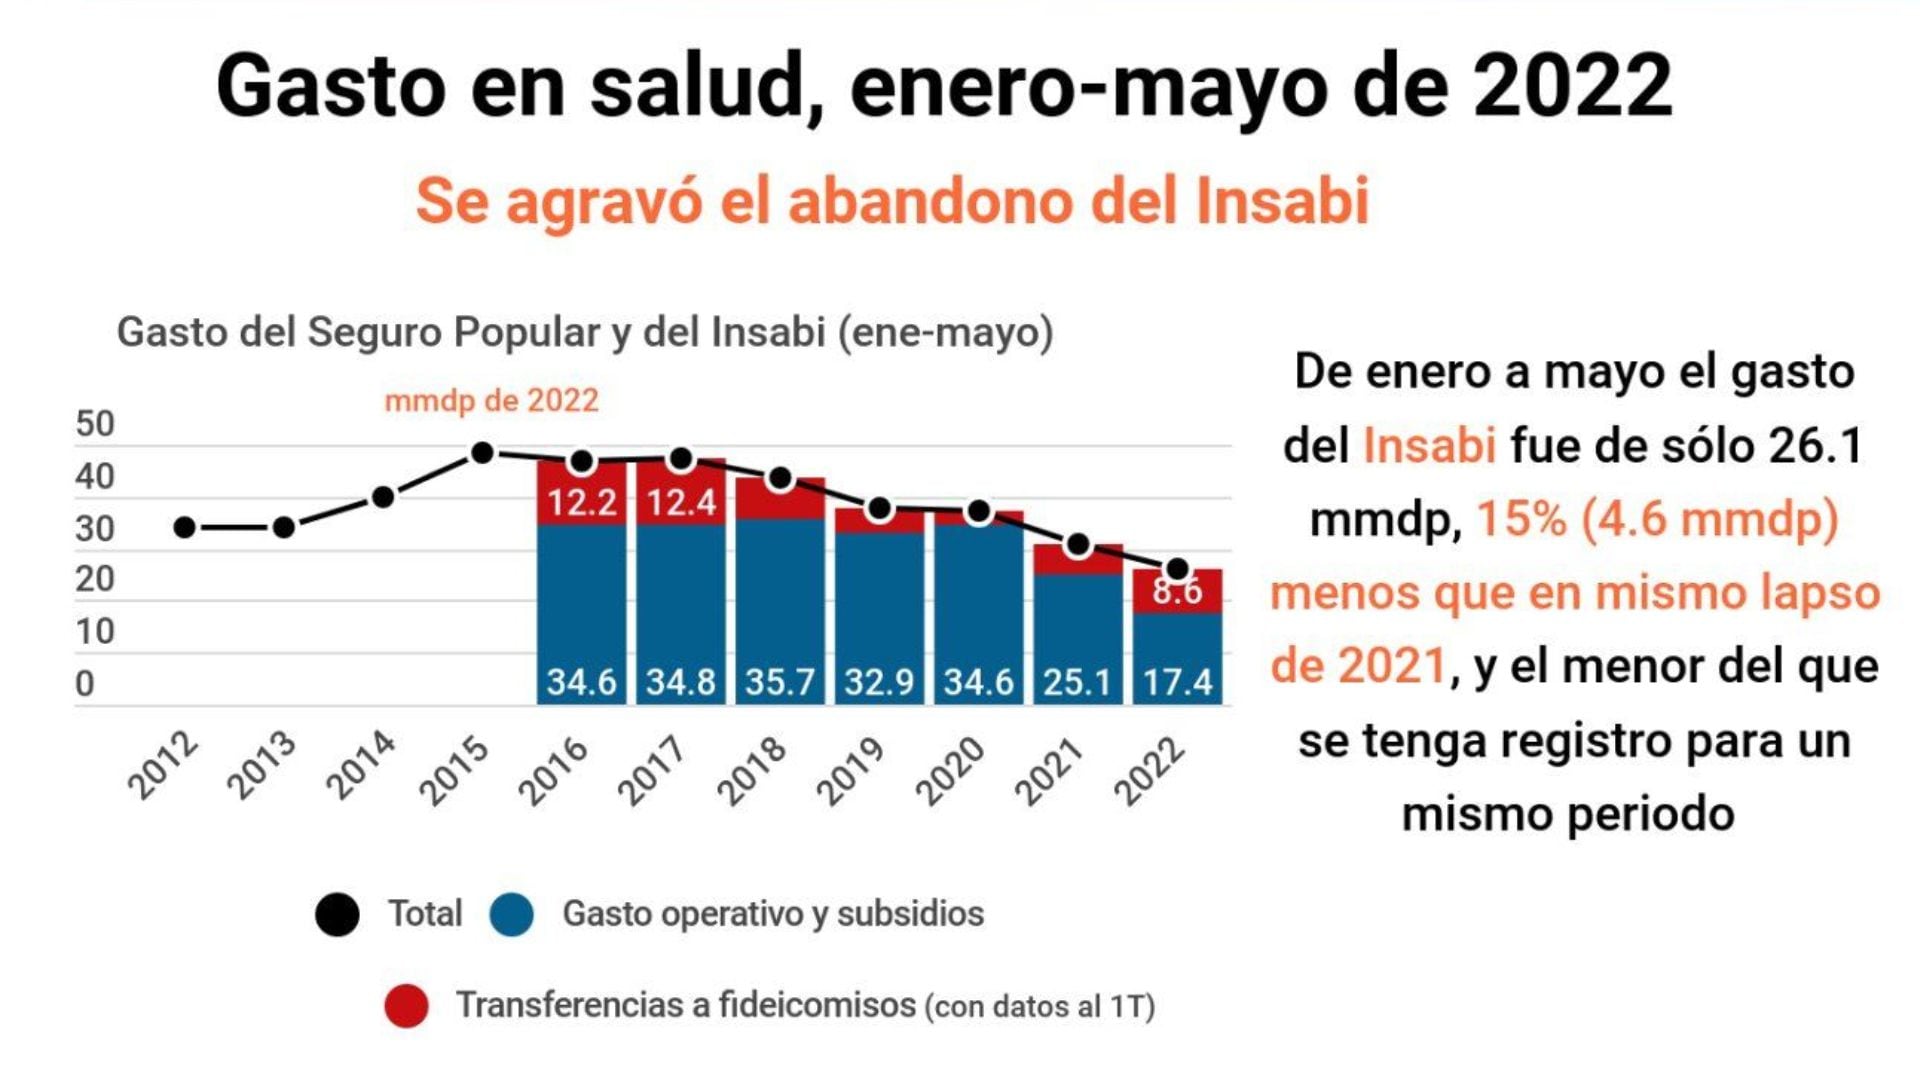 México Evalúa alertó que tanto el gasto como el número de consultas del Instituto presentaron una caída (Captura: Twitter/@mexevalua)